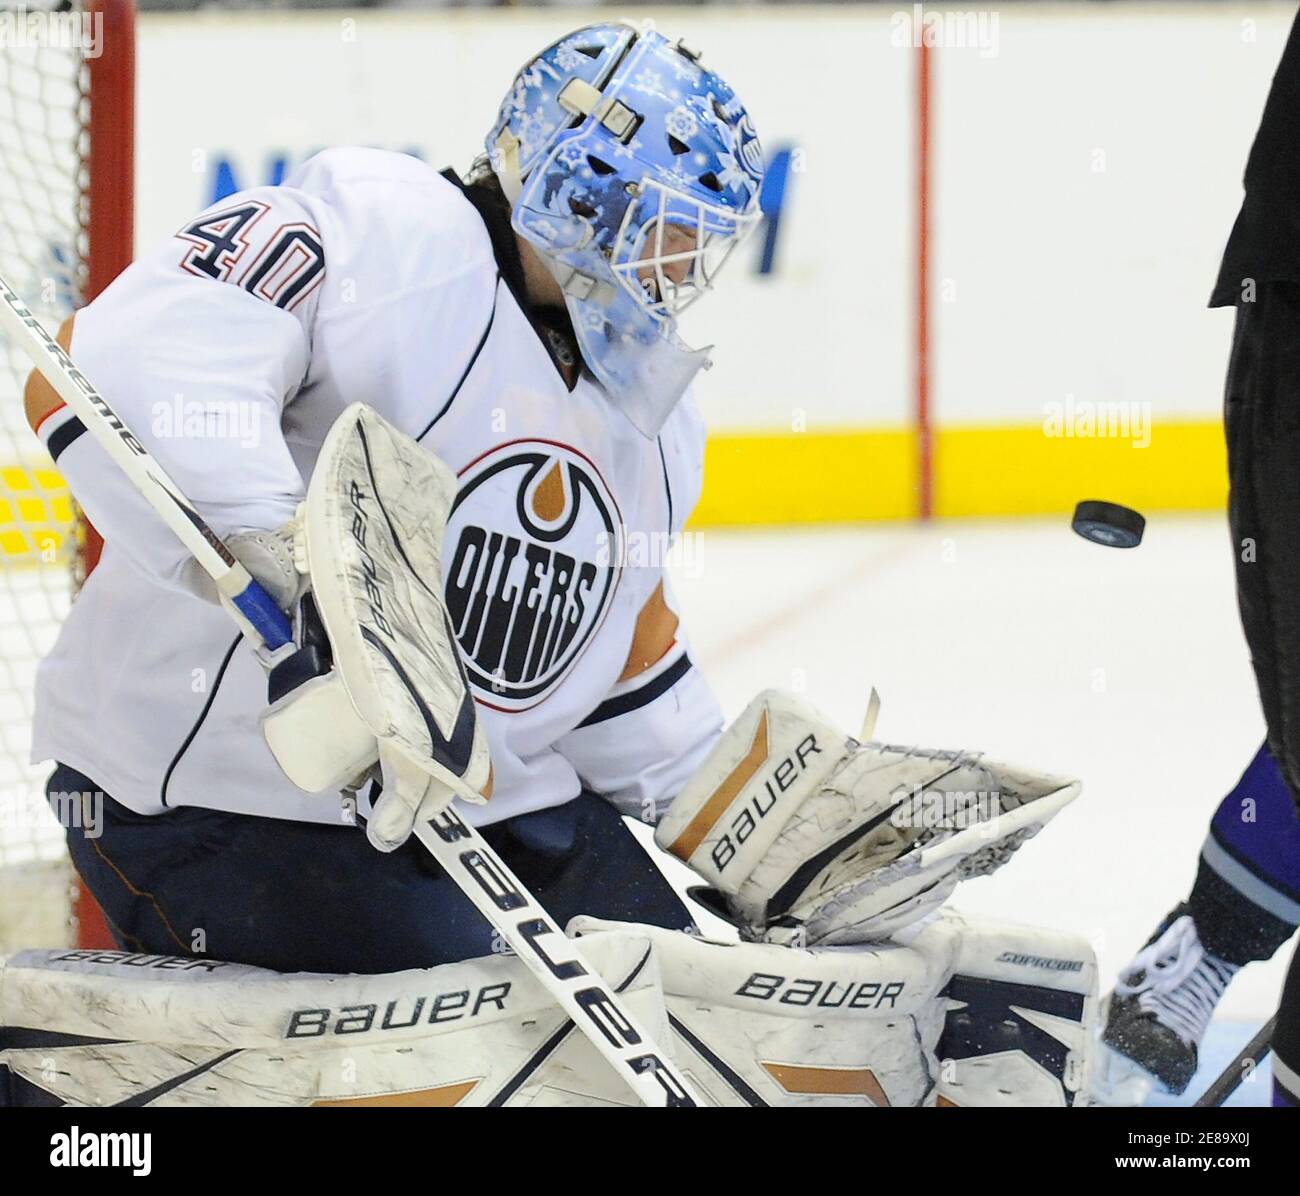 Edmonton Oilers Torhüter Devan Dubnyk blockiert einen Schuss in der zweiten Periode eines NHL-Eishockey-Spiel gegen die Los Angeles Kings in Los Angeles, Kalifornien, 10. April 2010. Die Oilers gewannen 4:3. REUTERS/Gus Ruelas (VEREINIGTE STAATEN - Tags: SPORT EISHOCKEY) Stockfoto